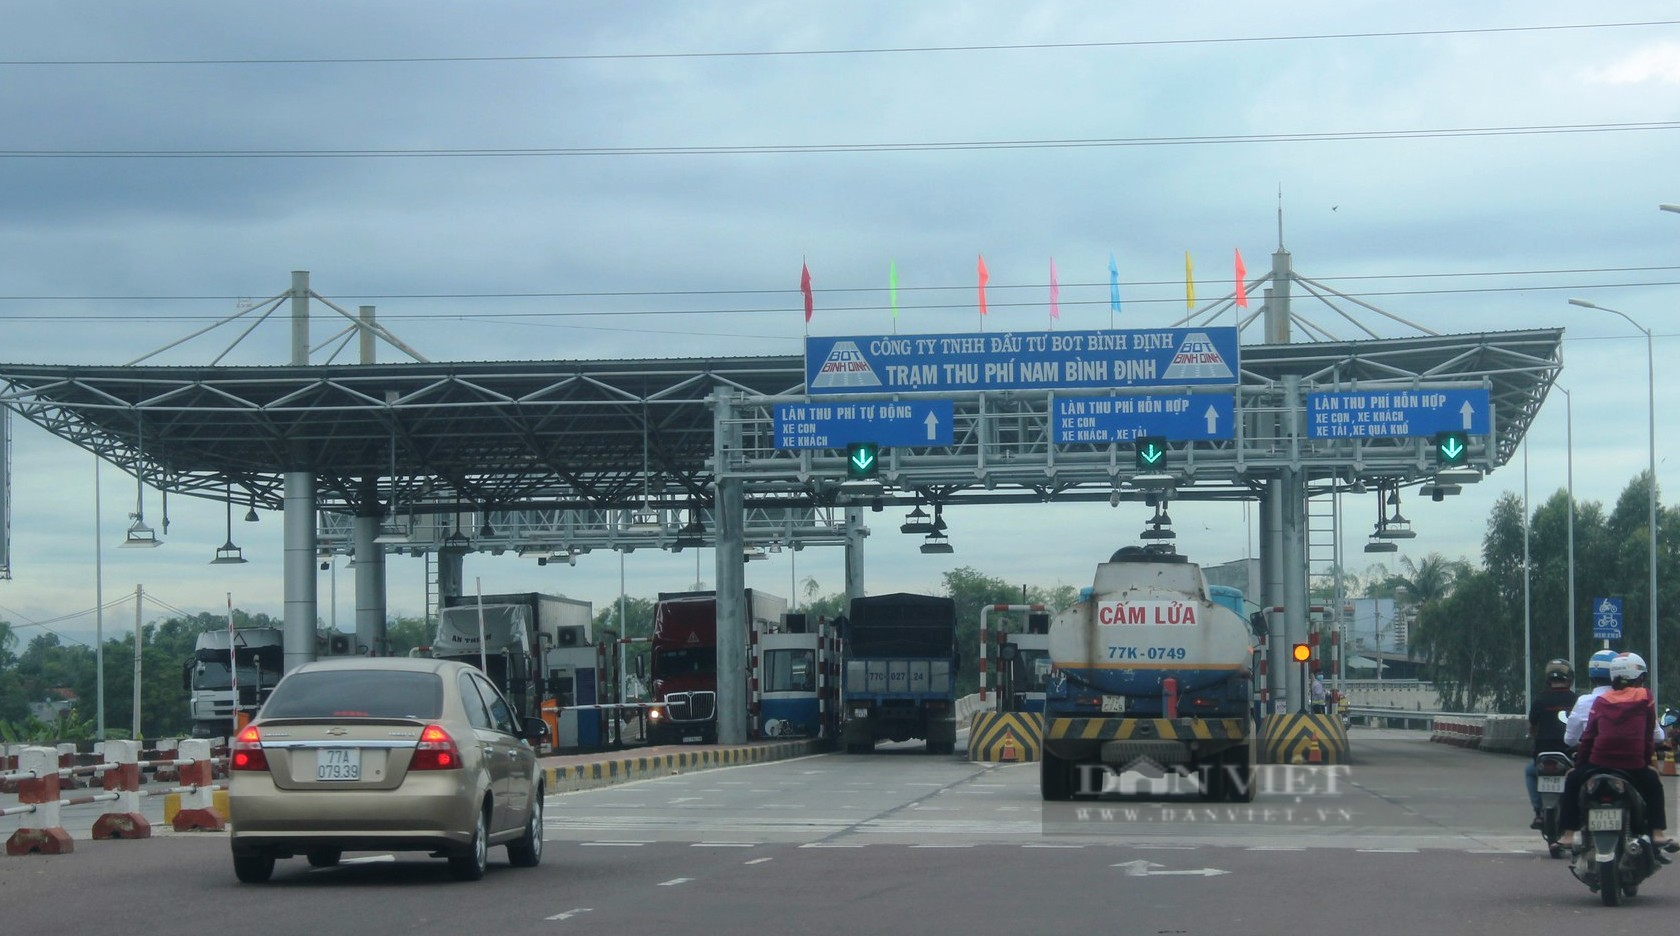 3 lái xe Cục Quản lý thị trường Bình Định bị khởi tố vì dùng vé thu phí đường bộ giả - Ảnh 2.